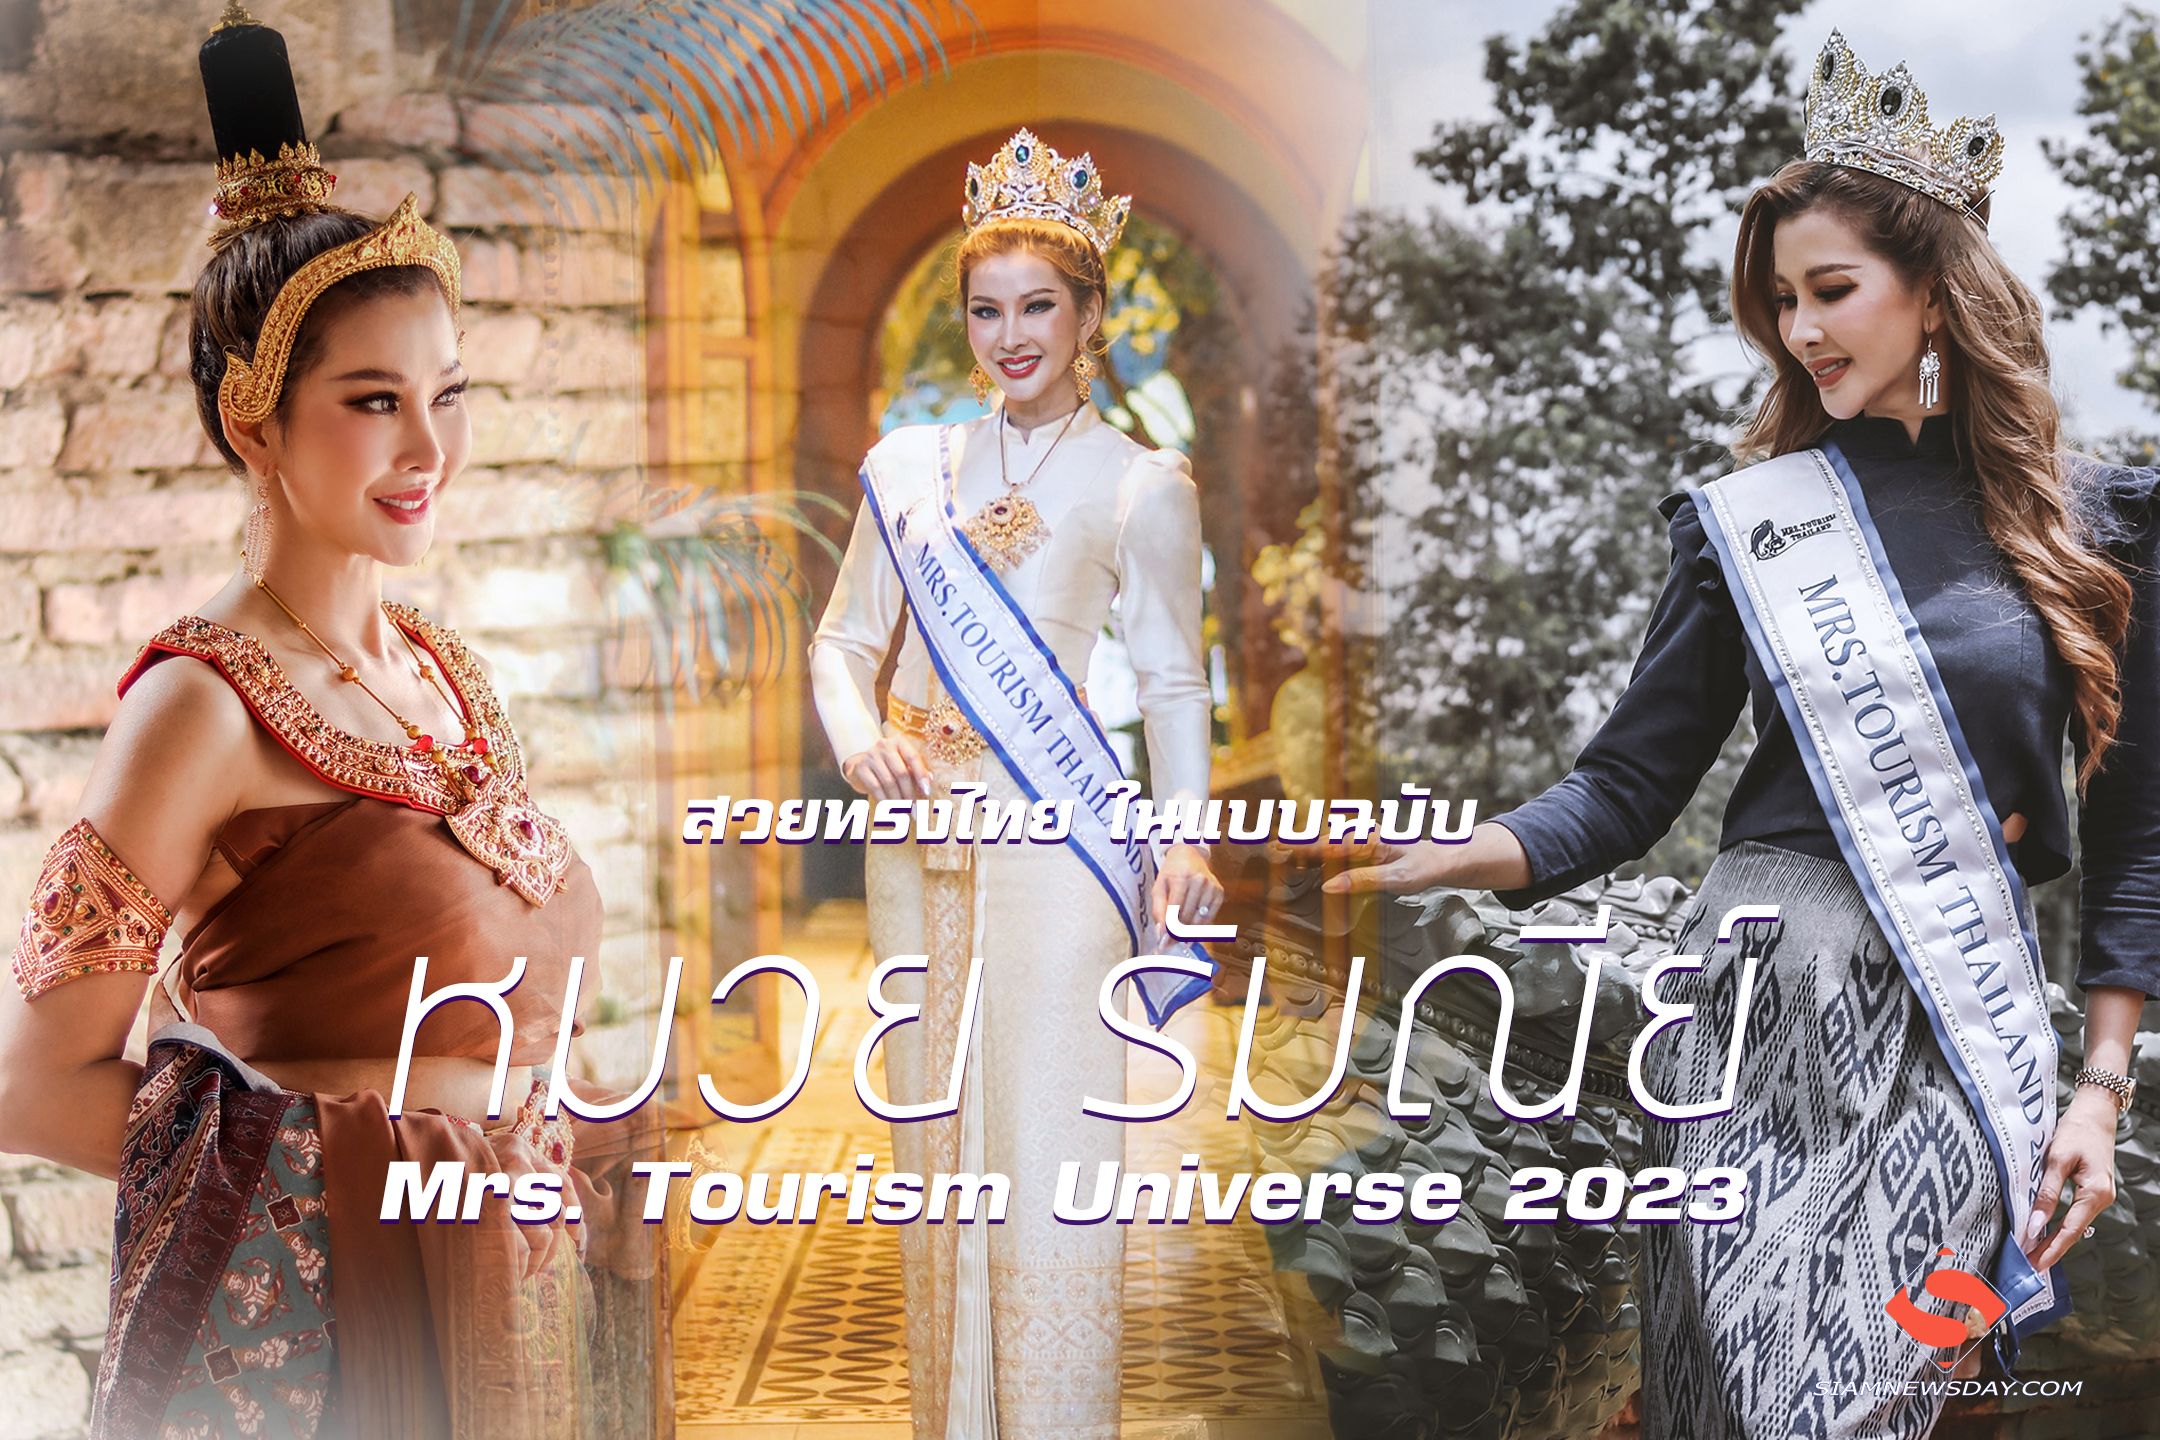 รวบตึงความสวยทรงไทย ในแบบฉบับ “หมวย รัมณีย์”  Mrs. Tourism Universe 2023 